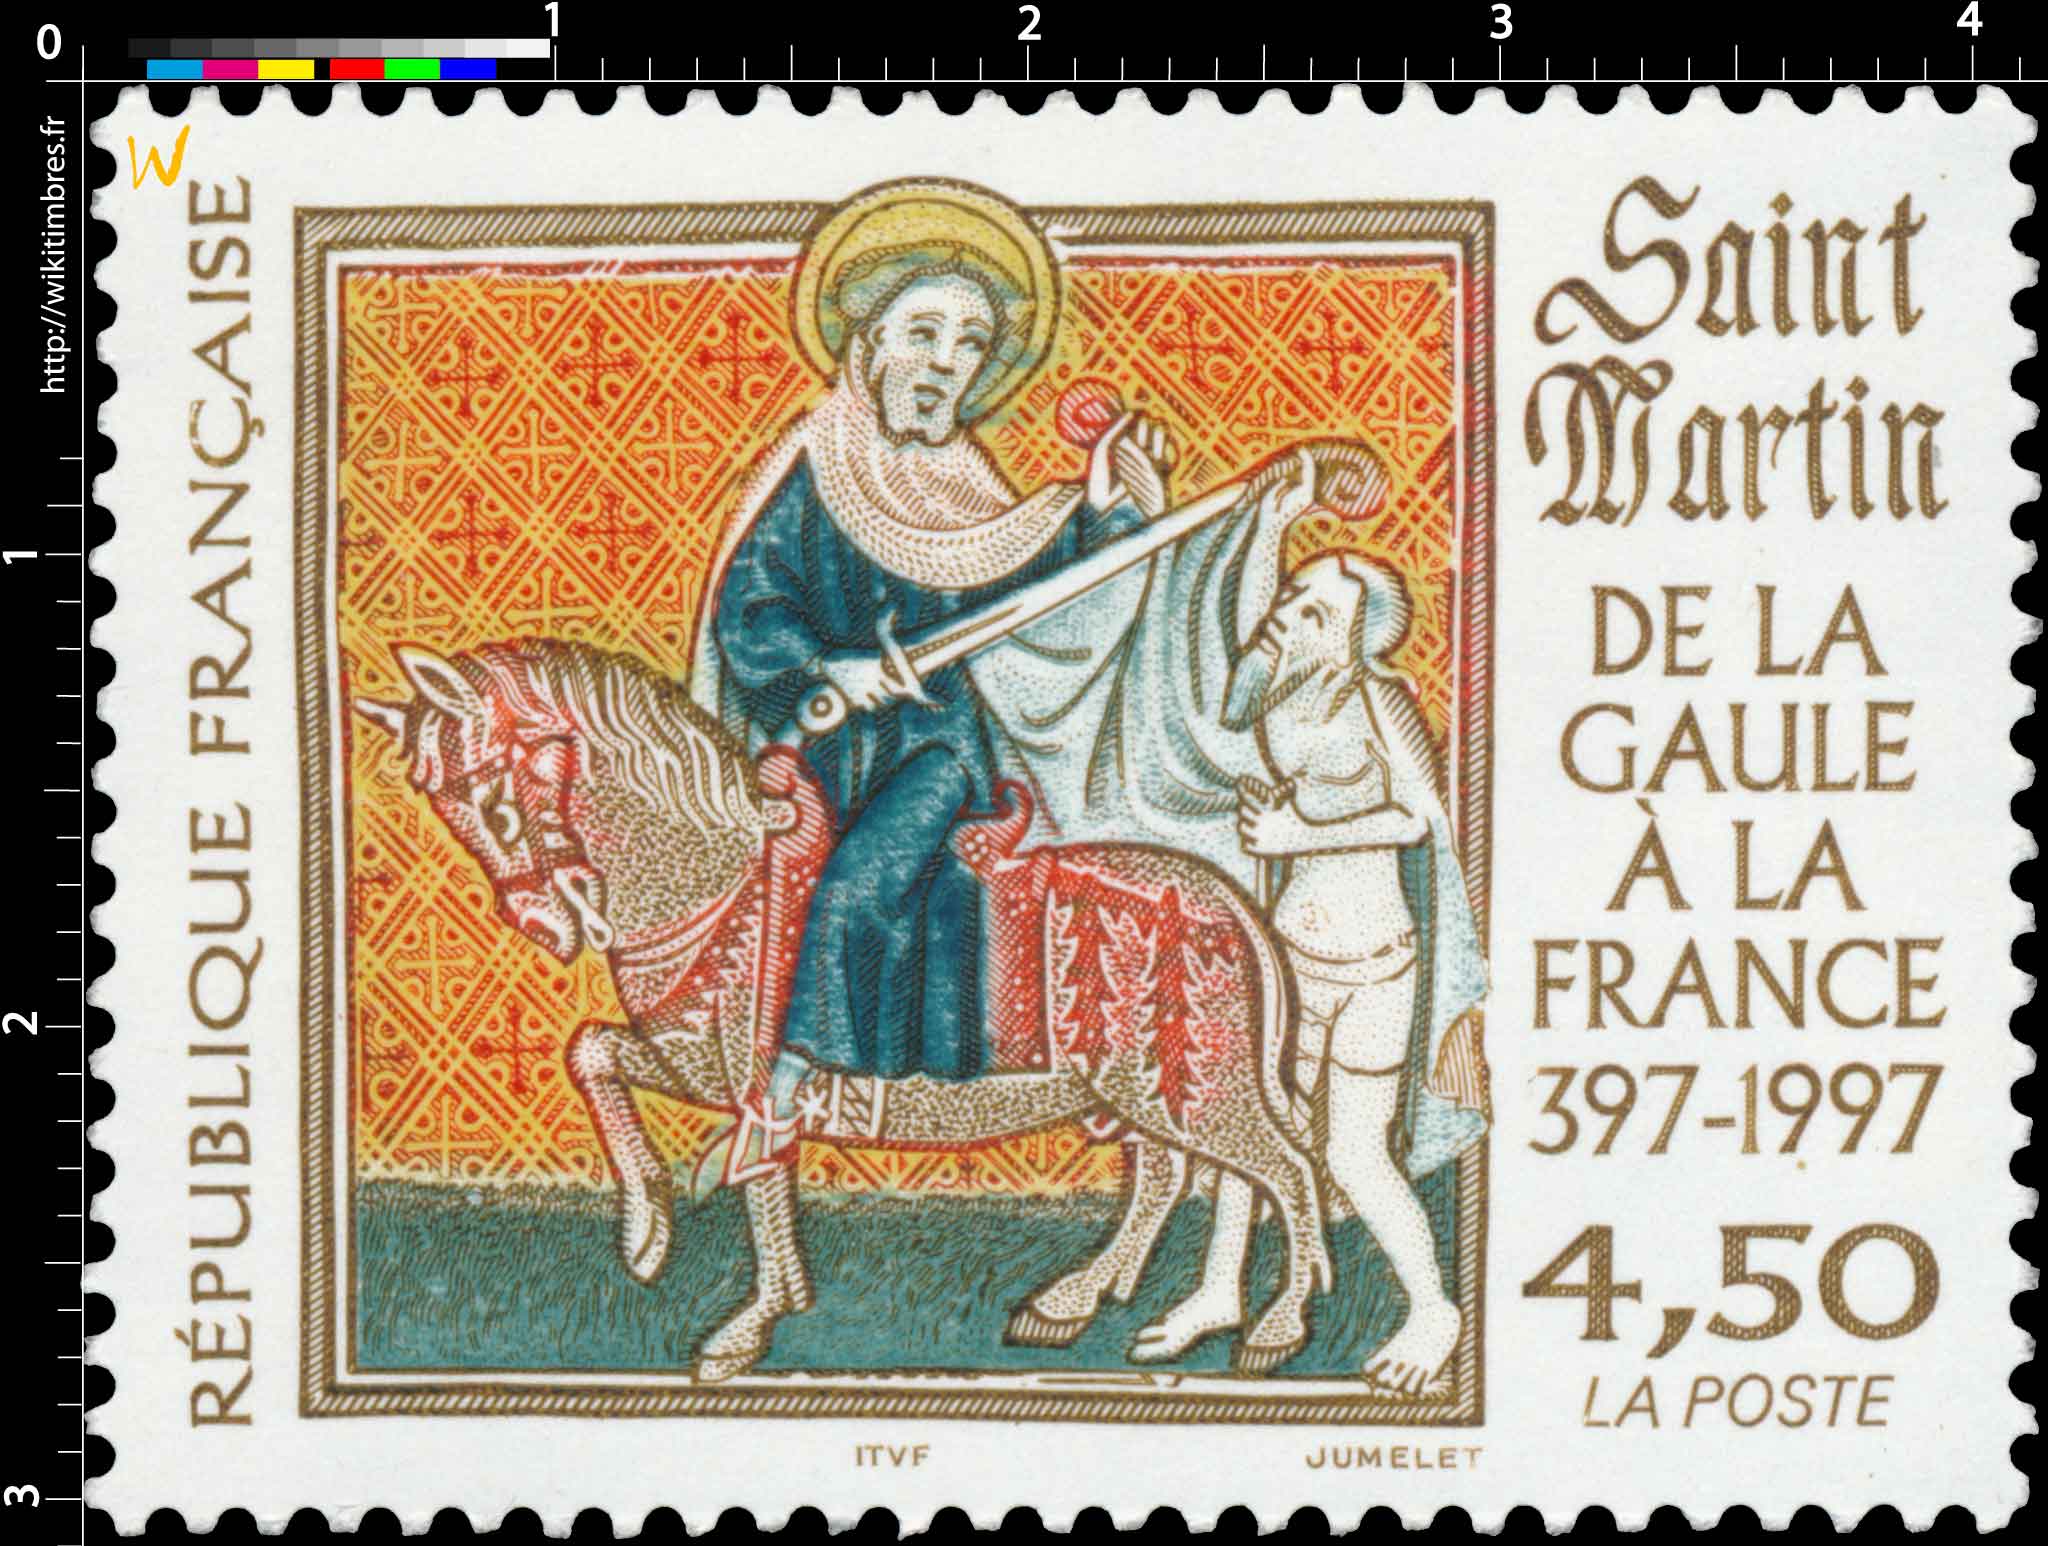 Saint Martin DE LA GAULE À LA FRANCE 397-1997